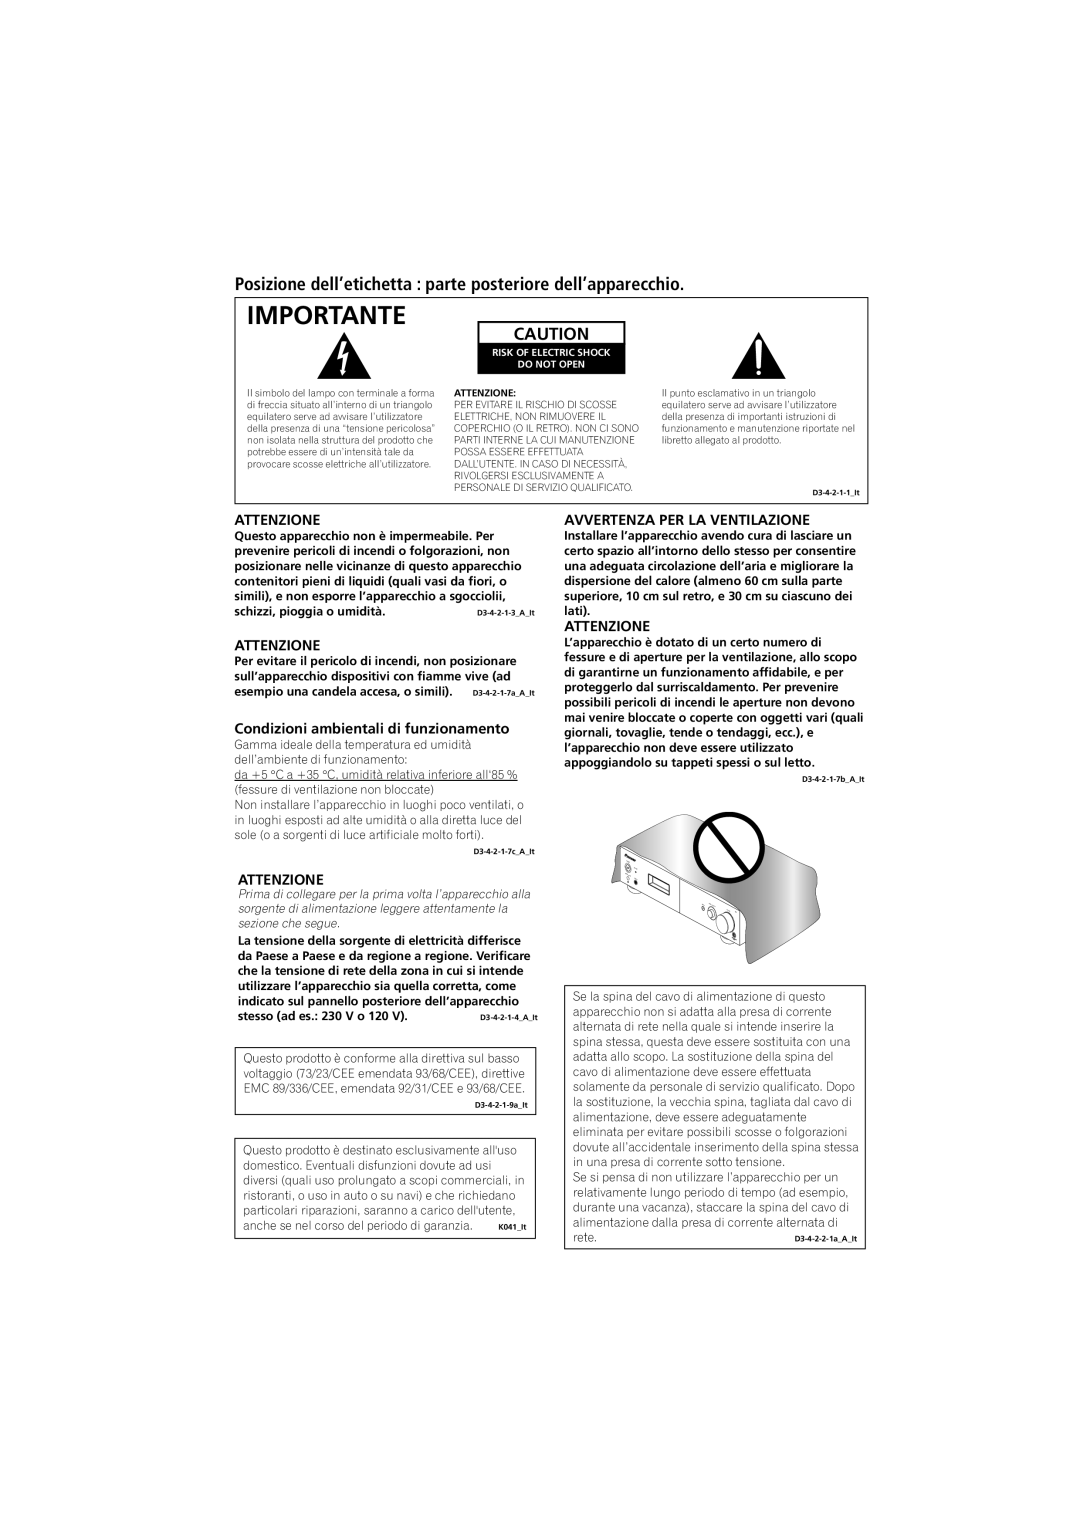 Pioneer A-A6-J manual Importante, Attenzione, Condizioni ambientali di funzionamento, Avvertenza Per La Ventilazione 